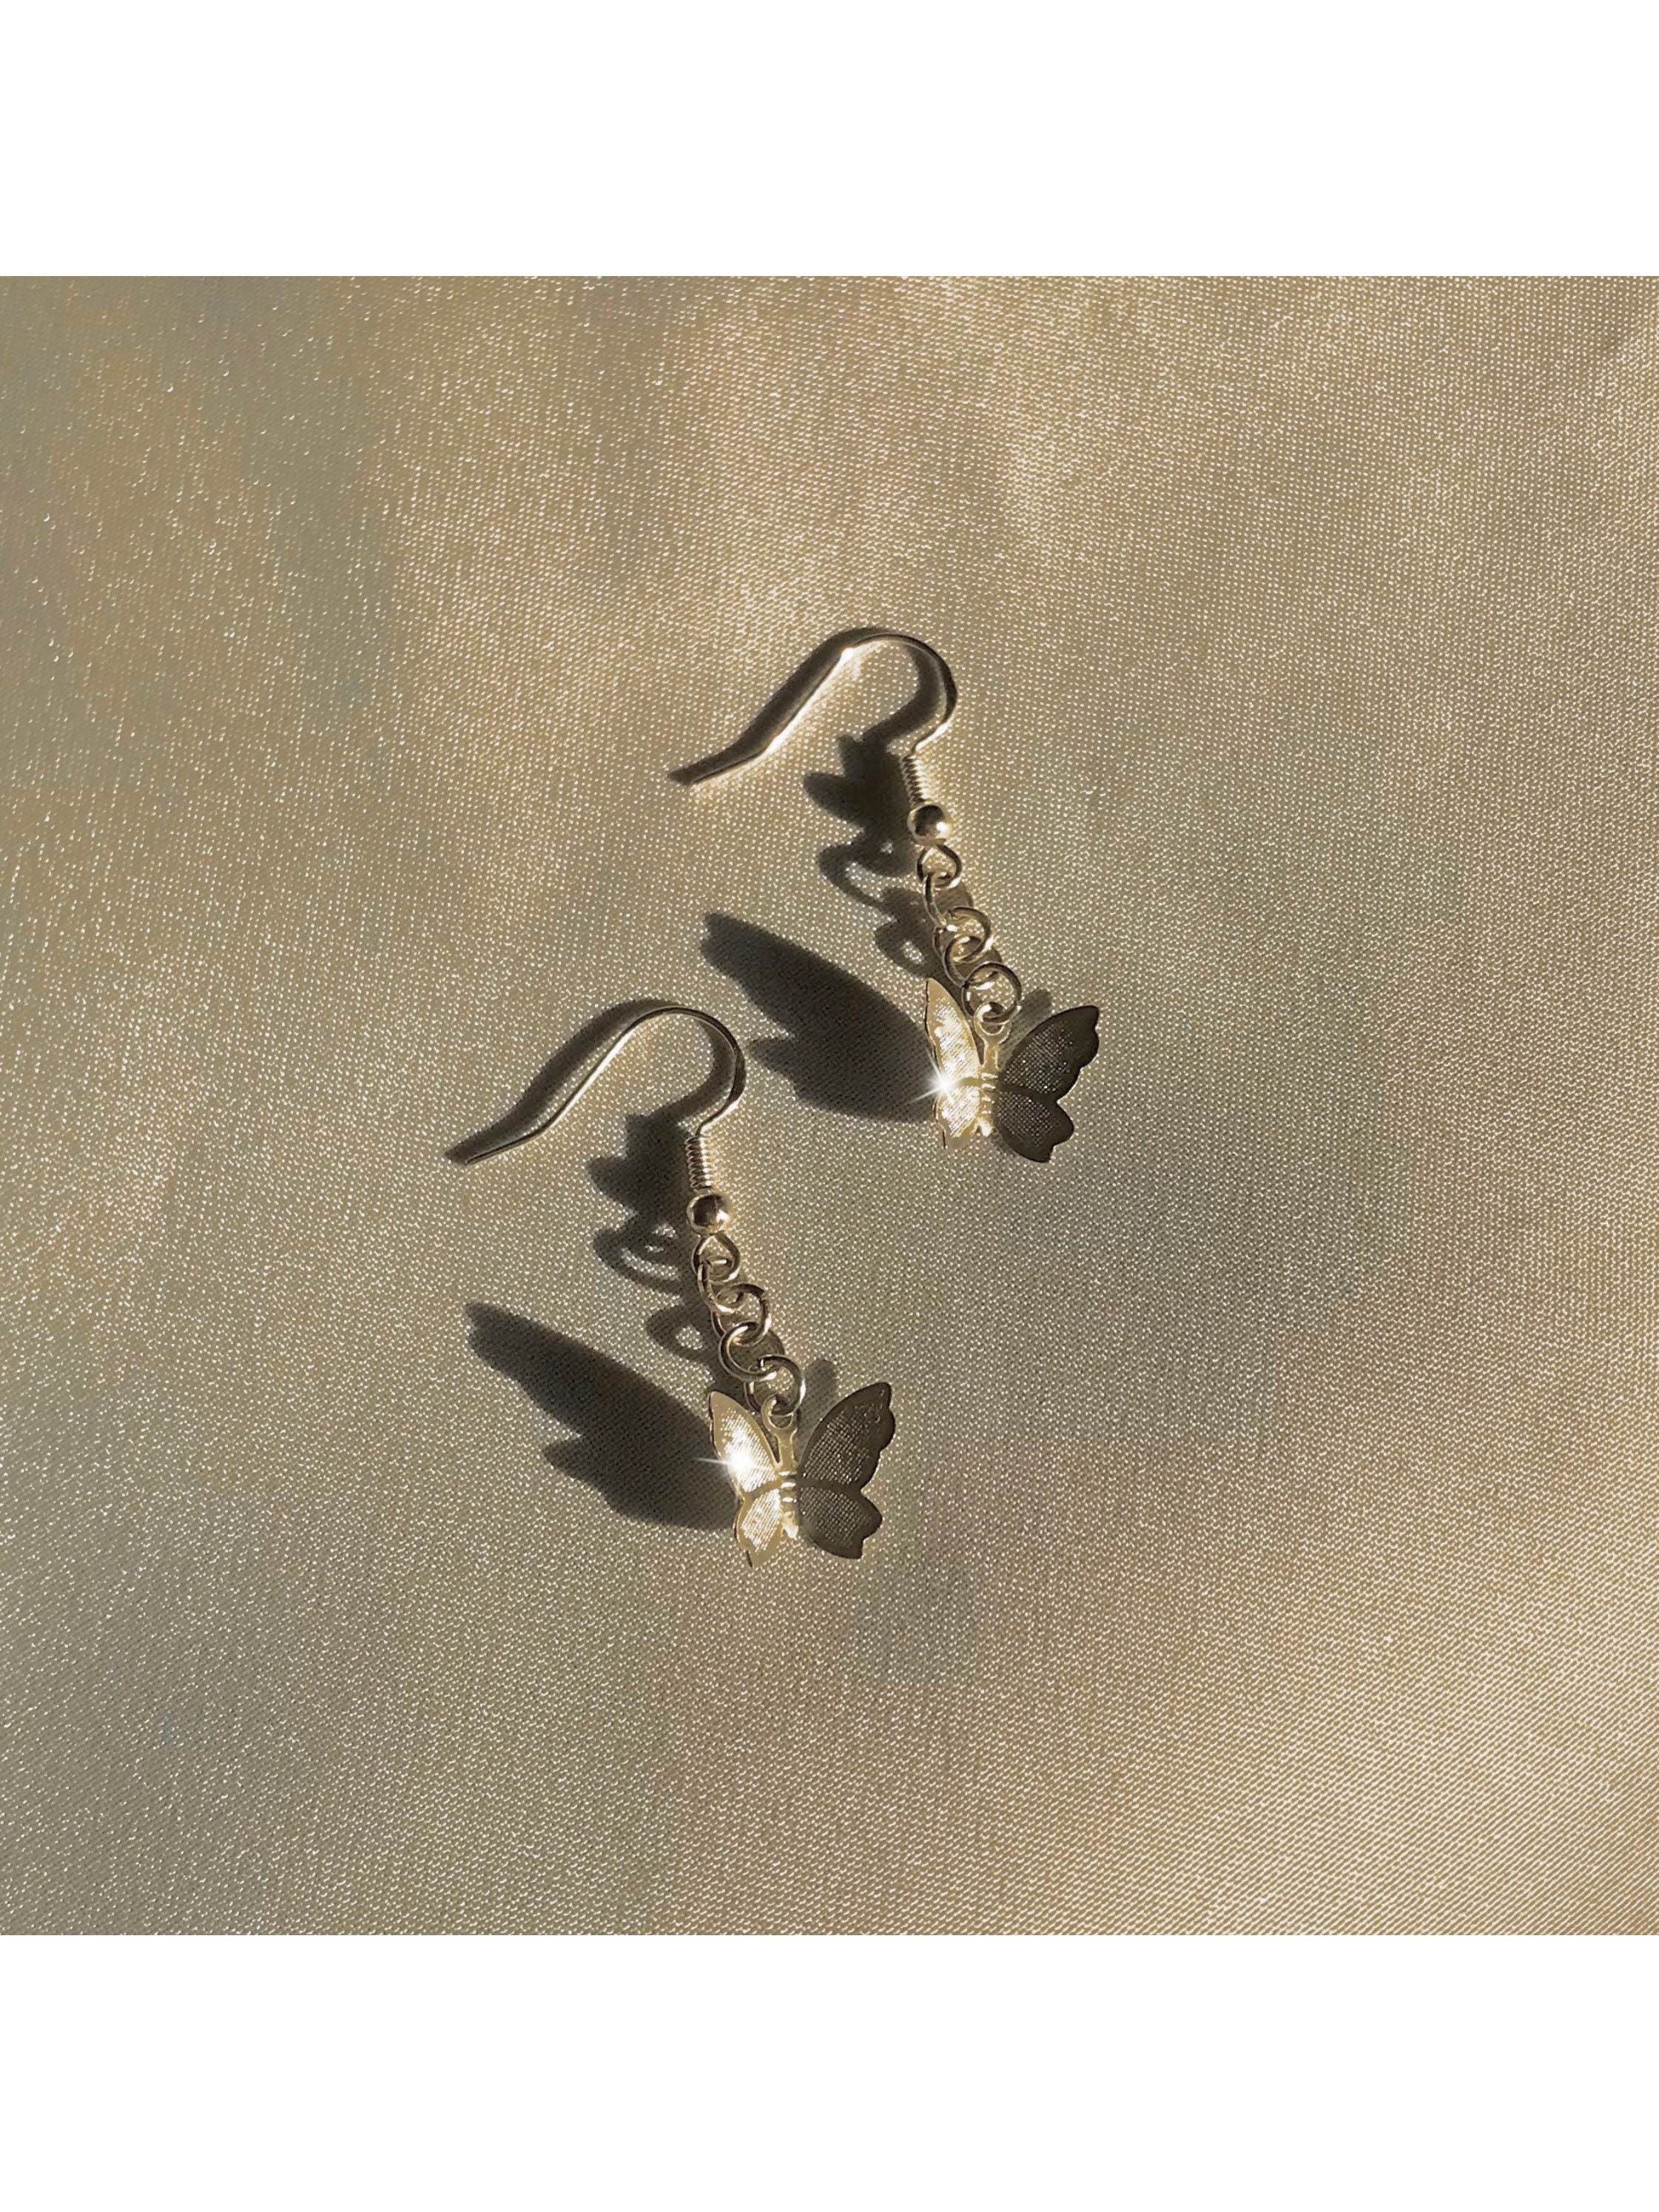 Butterfly Aesthetic Earrings Chain Drop Earrings Charm | Etsy